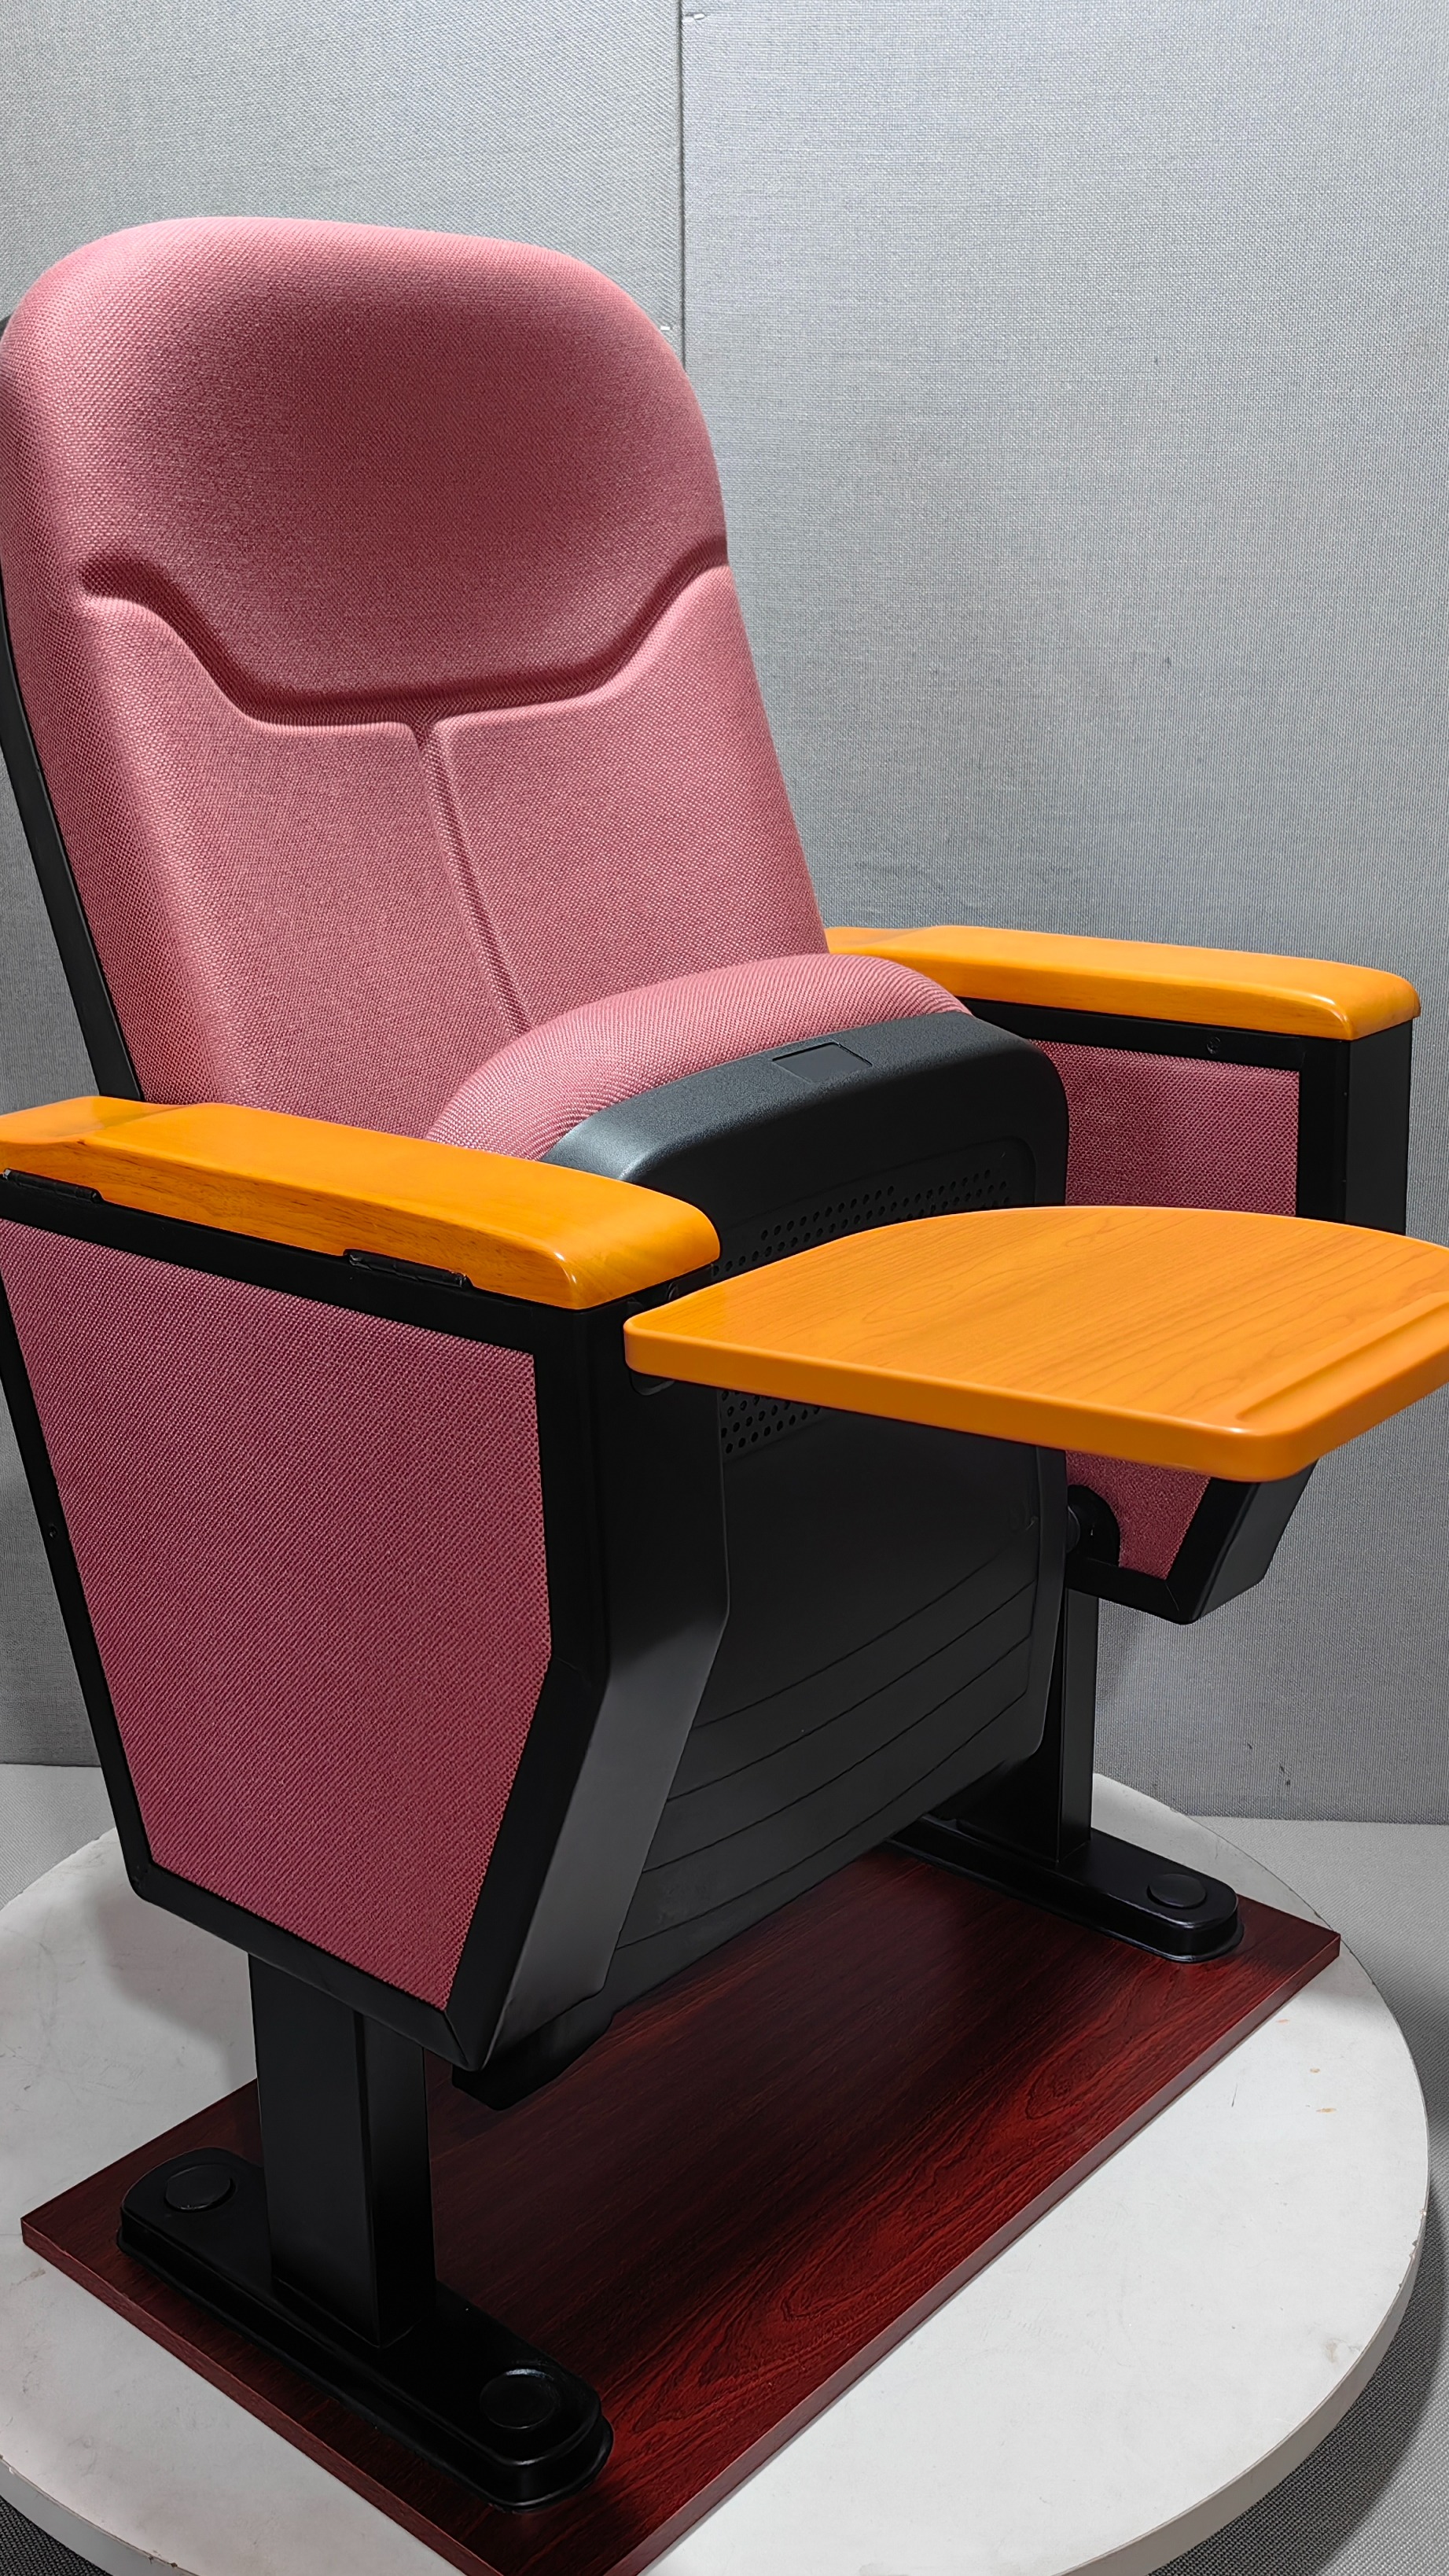 报告厅礼堂座椅坐感舒适款式新意带可翻转功能